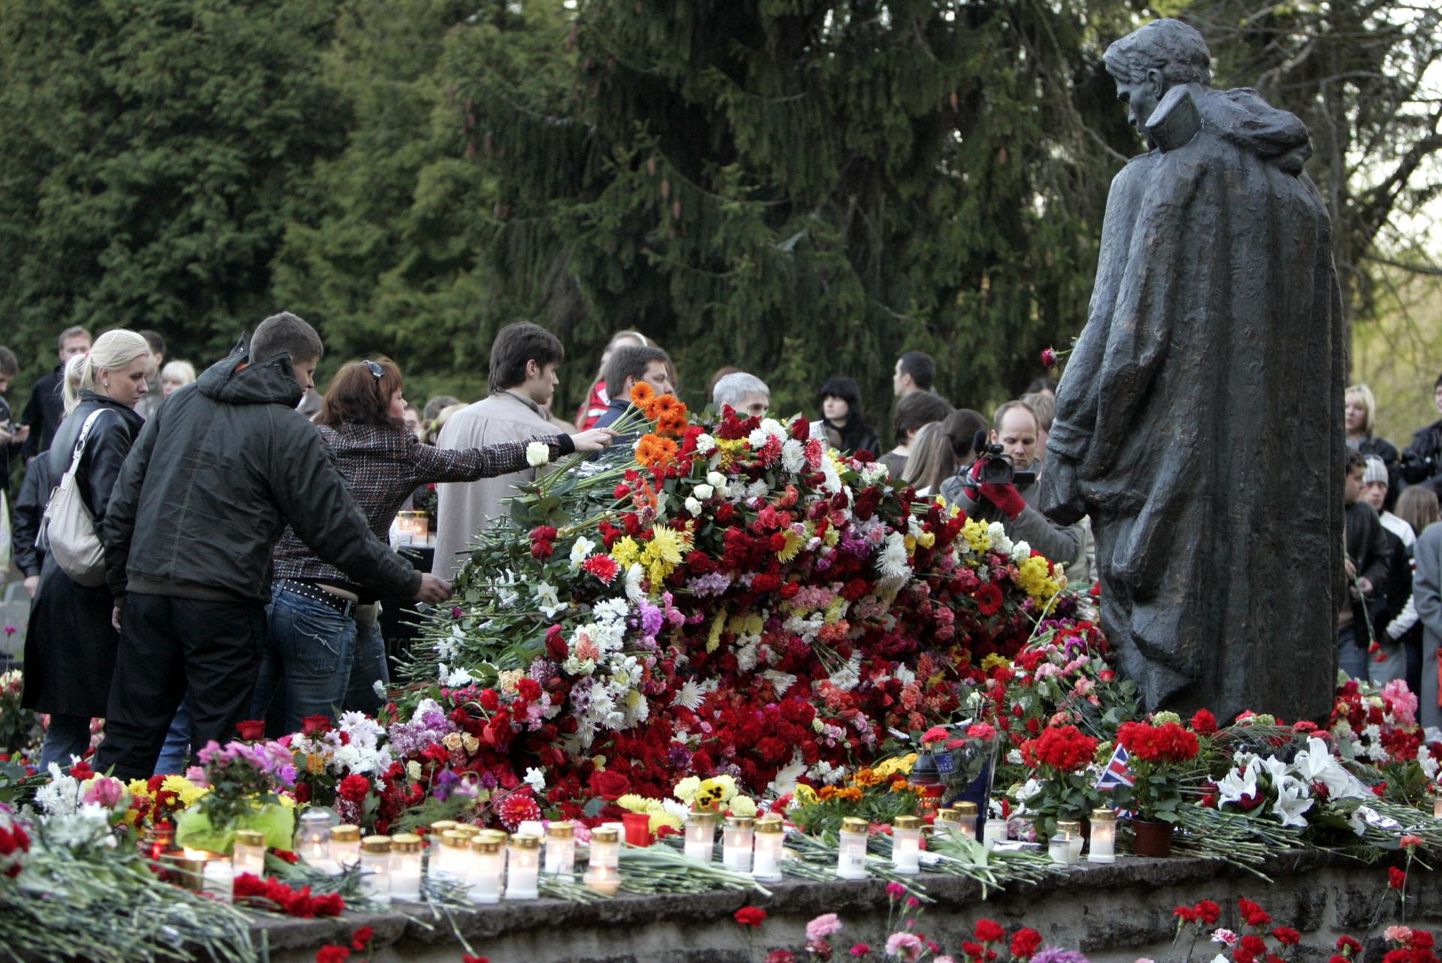 Андрус Ансип заявил, что Бронзовый солдат в центре Таллинна, на Тынисмяги, ясно символизирует оккупацию, но символ оккупации на кладбище как символ ничего не стоит.